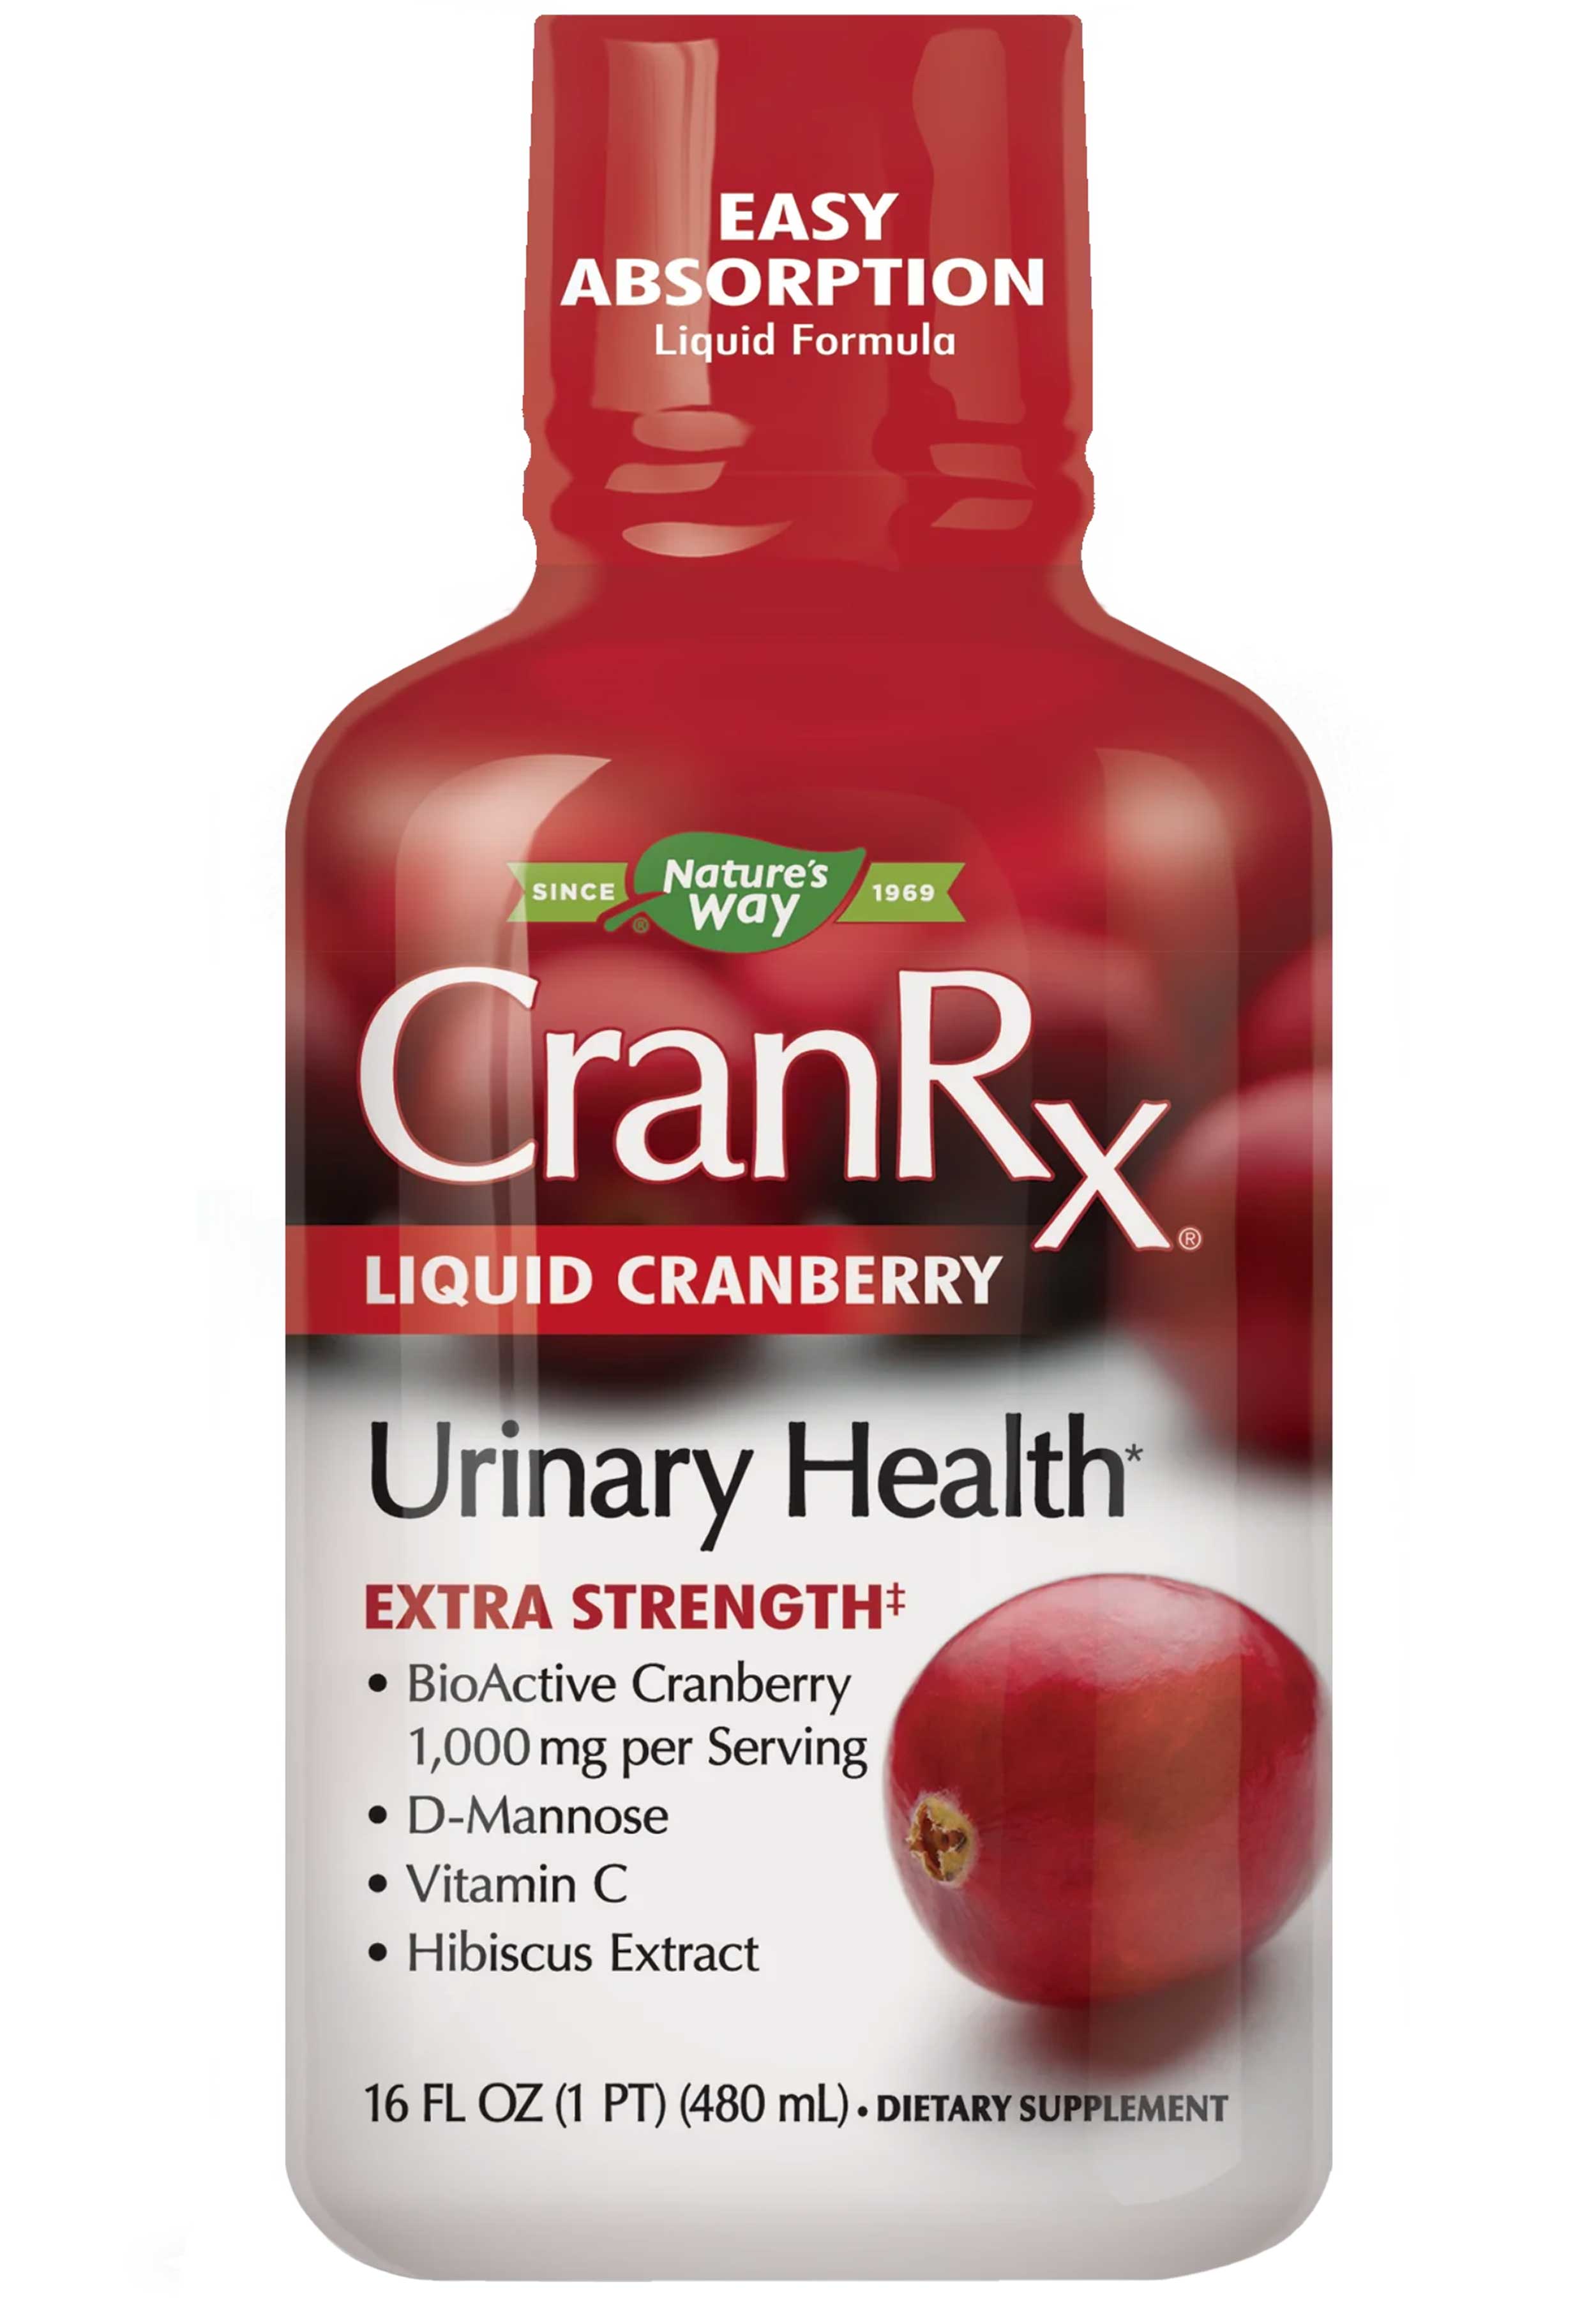 Nature's Way CranRx Liquid Cranberry